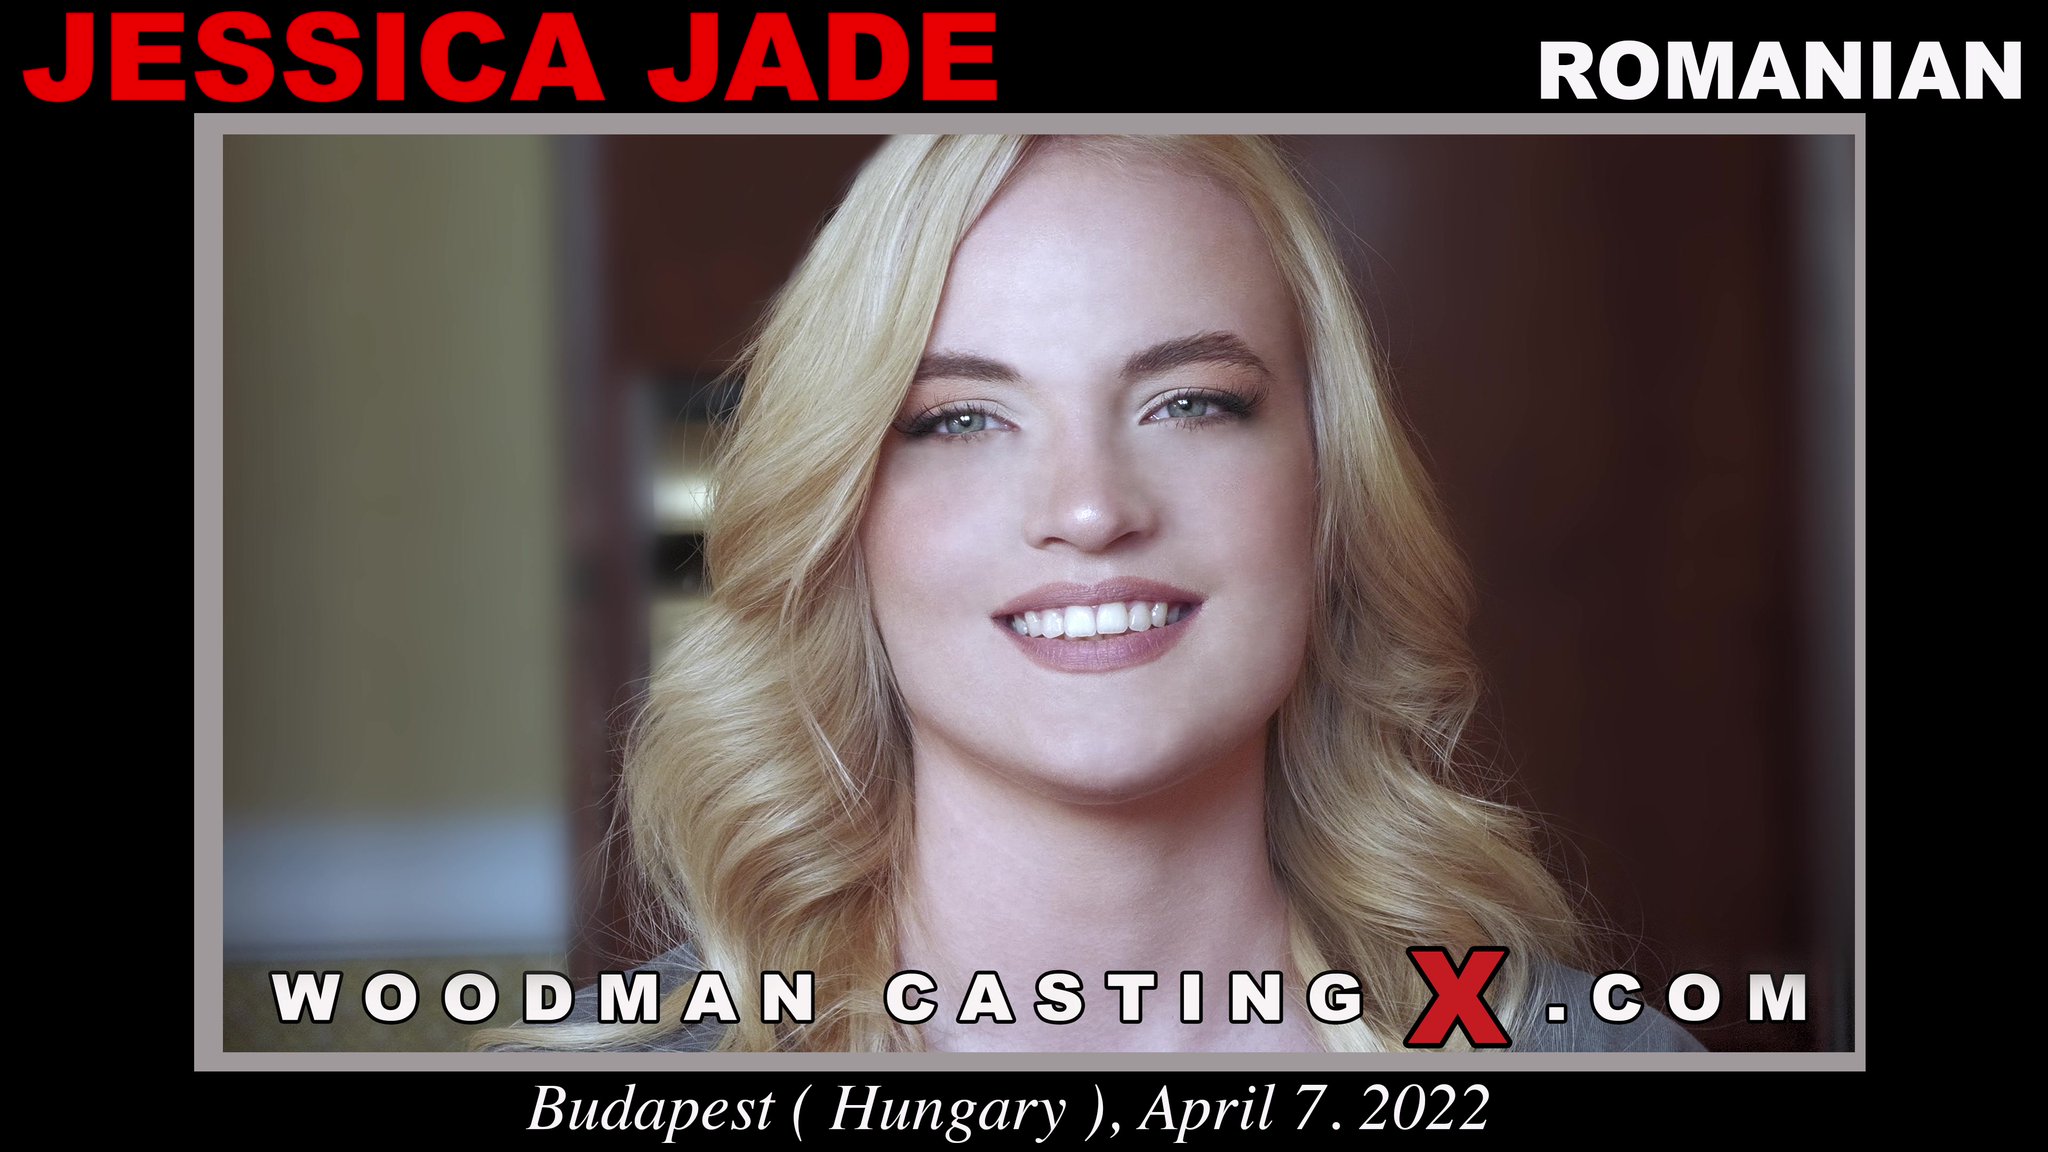 Tw Pornstars Woodman Casting X Twitter New Video Jessica Jade 831 Am 21 Jun 2022